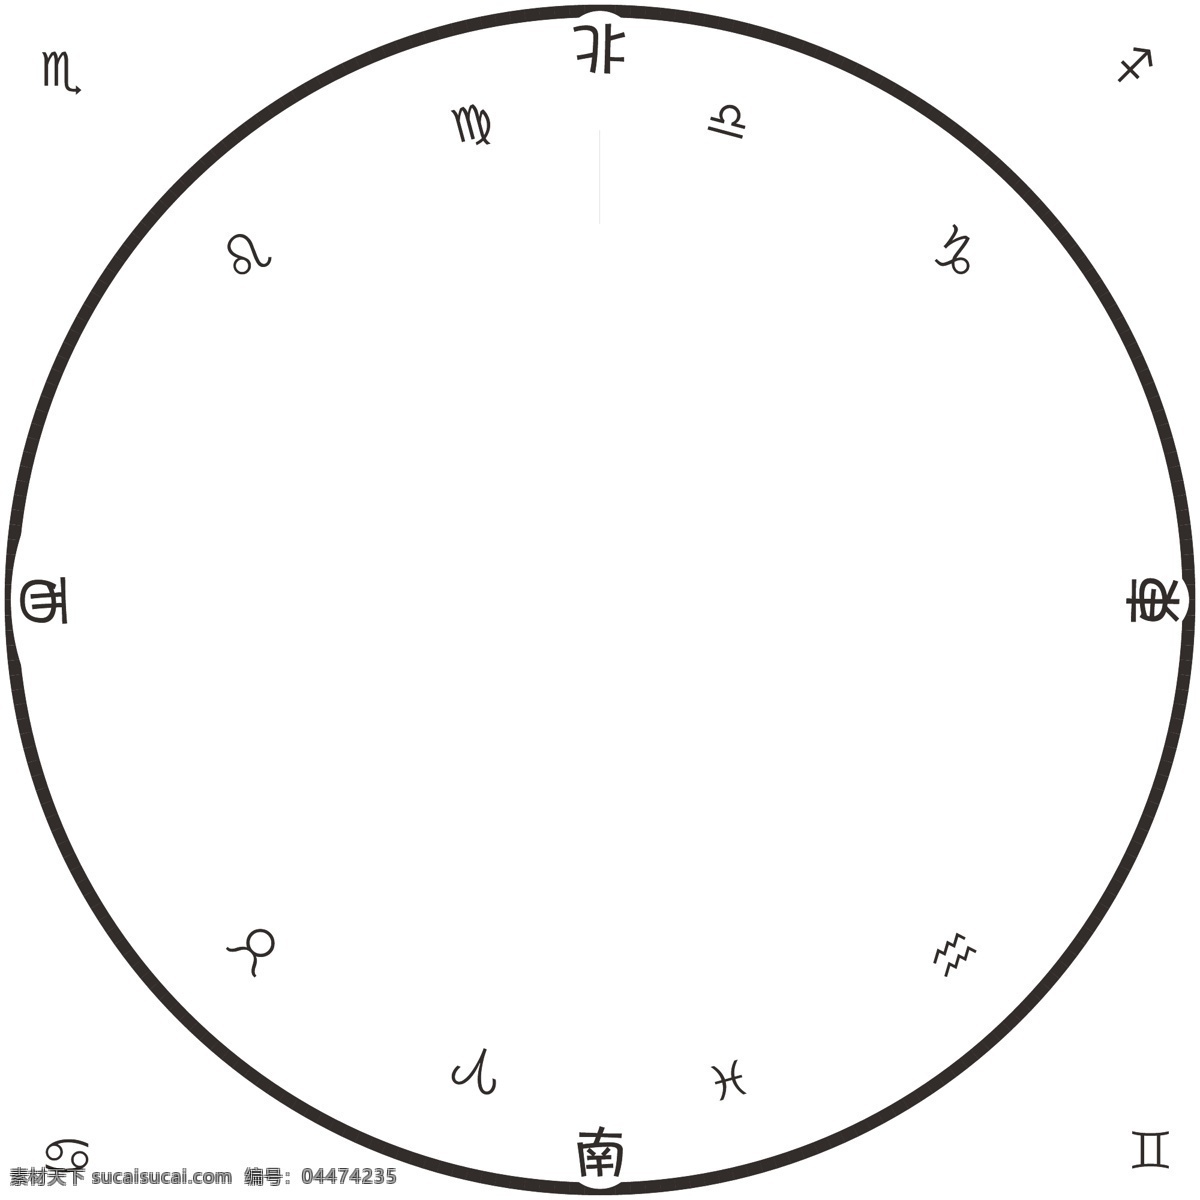 魔法 阵 矢量图 日月星辰 星座 时钟 魔法阵 咒语 钟表 刻度 圆形 插画 动漫动画